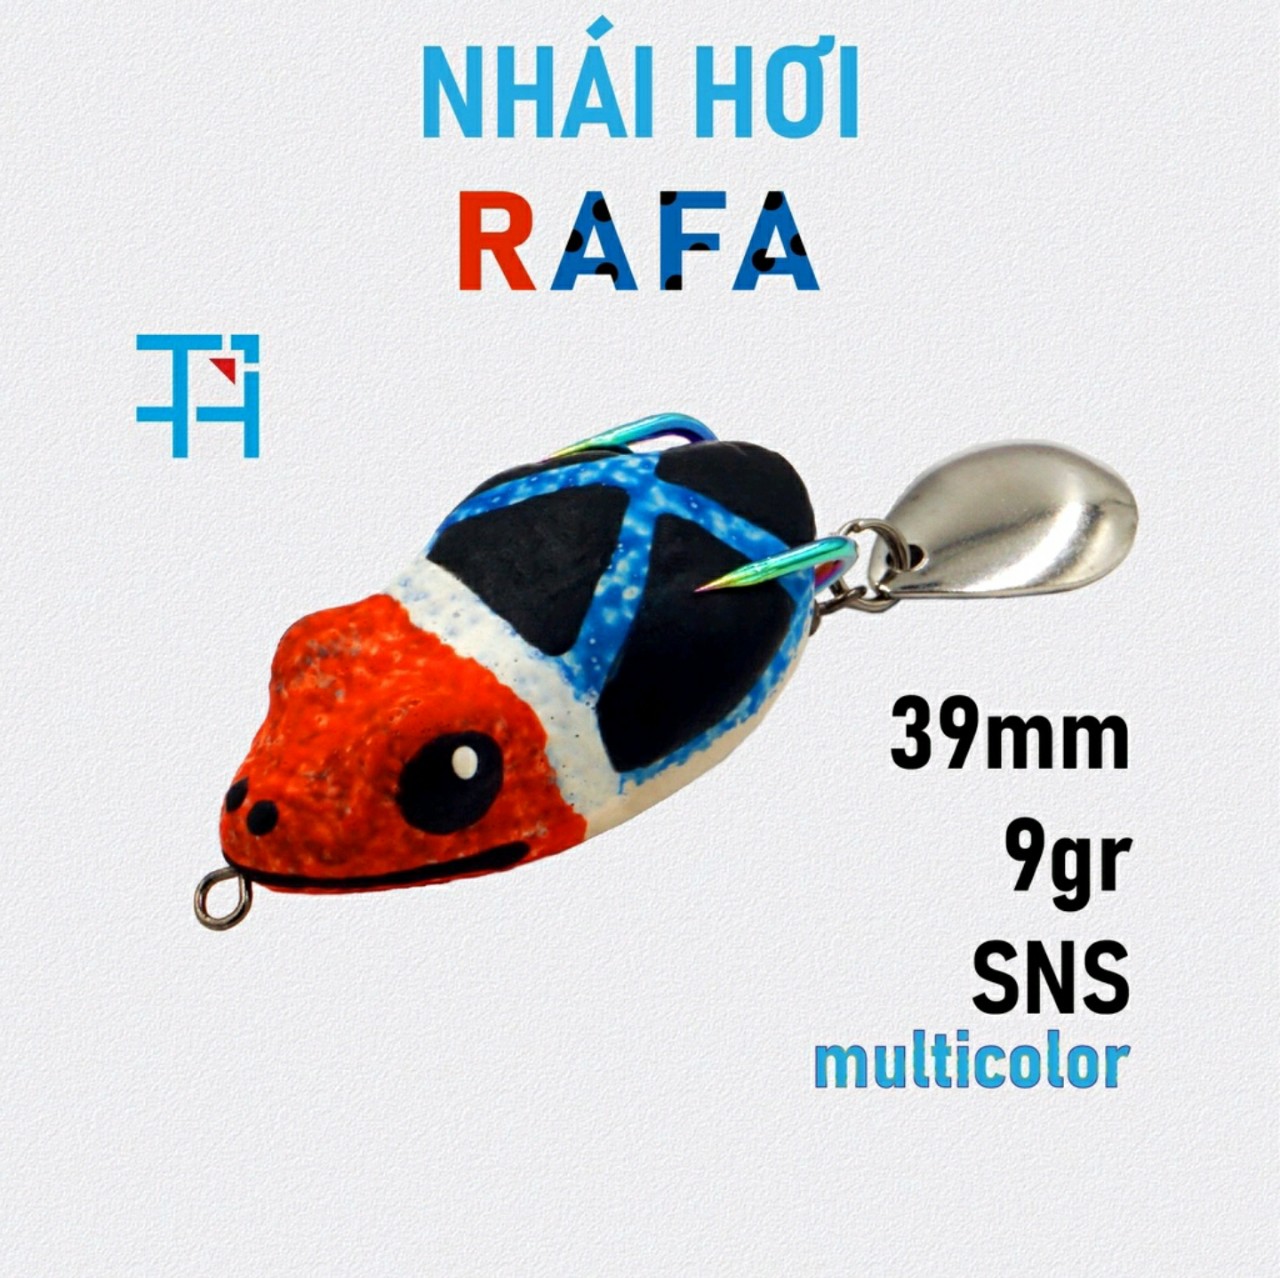 NHÁI HƠI POISON RAFA - 3.9CM 9G - mồi giả Thái Lan câu lure cá lóc giá rẻ siêu nhạy